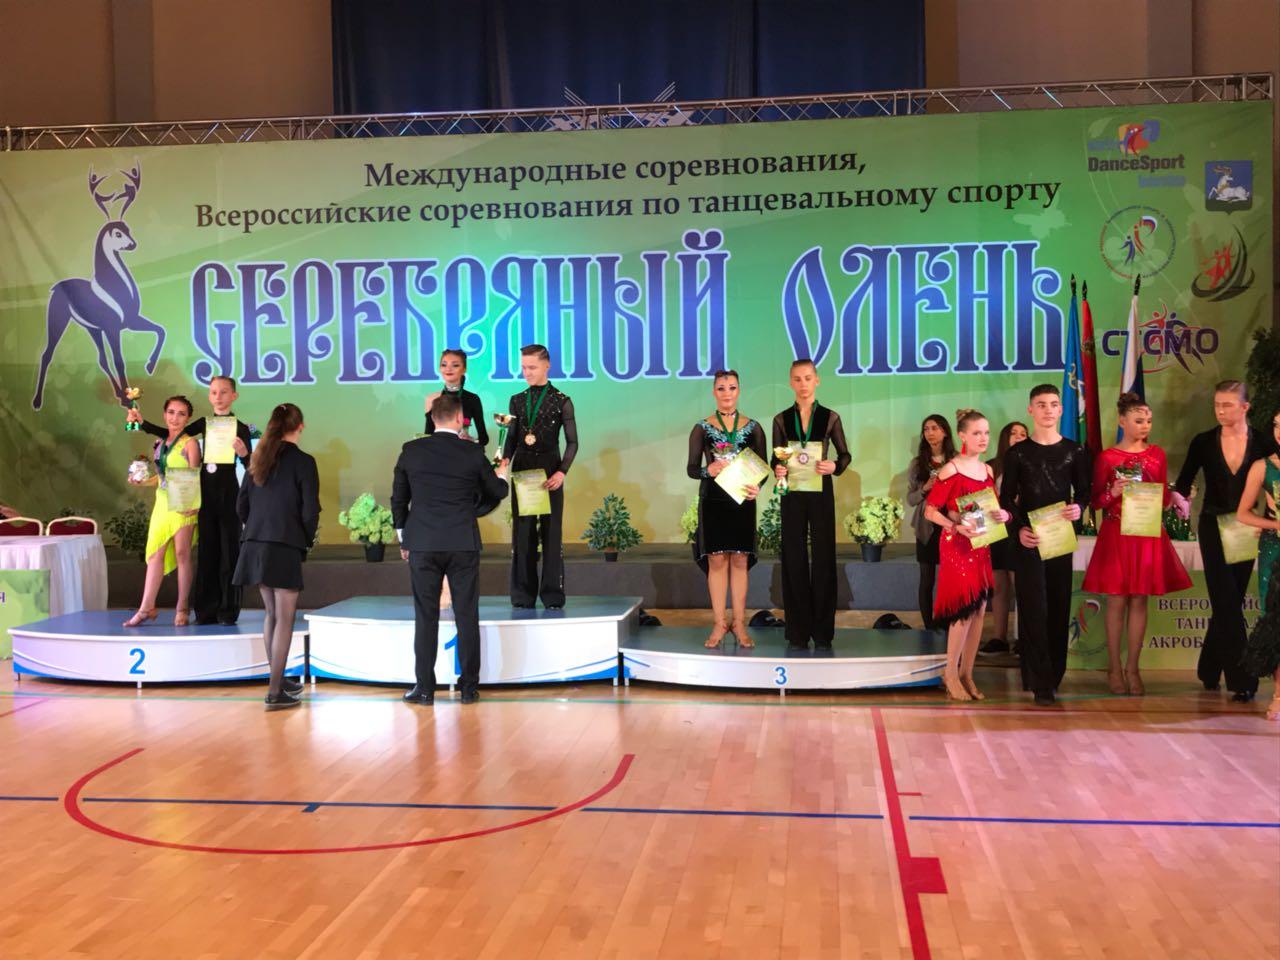 Народный ансамбль спортивного бального танца «Гейзер» занял призовые места во всероссийских соревнованиях юношей и девушек по танцевальному спорту «Серебряный олень».